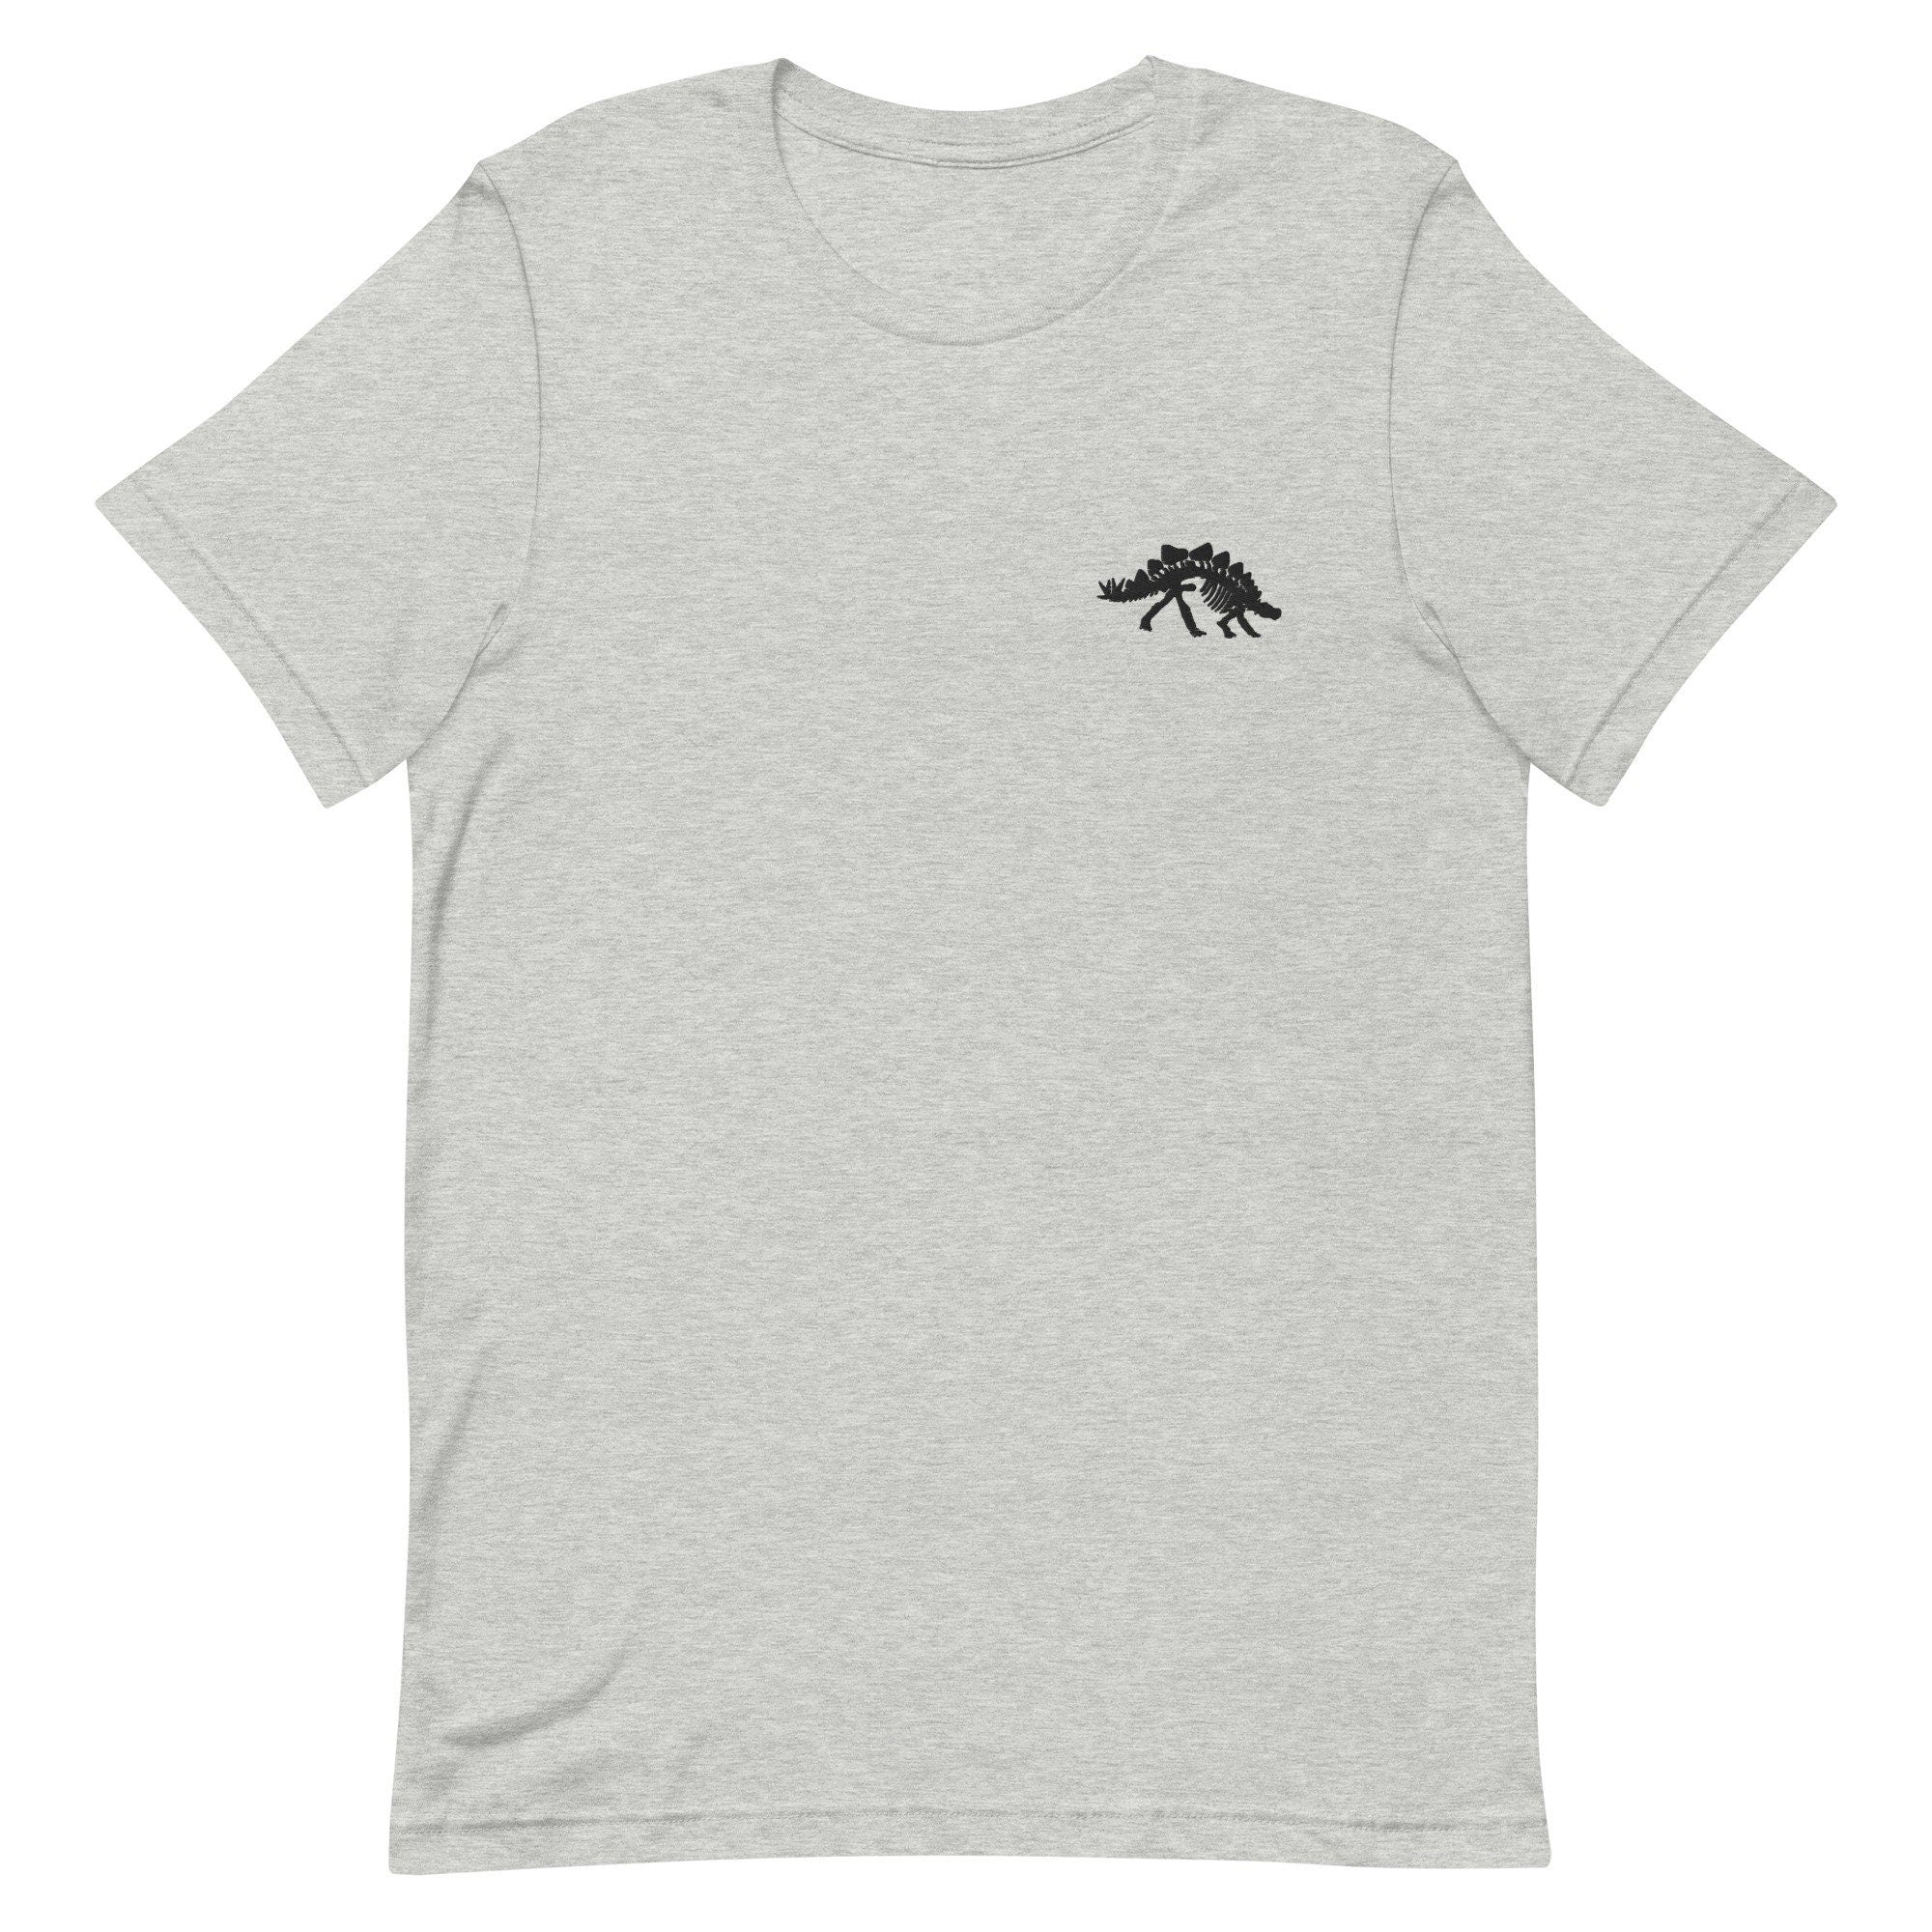 Stegosaurus Skeleton Premium Men's T-Shirt, Embroidered Men's T-Shirt Gift for Boyfriend, Men's Short Sleeve Shirt - Multiple Colors